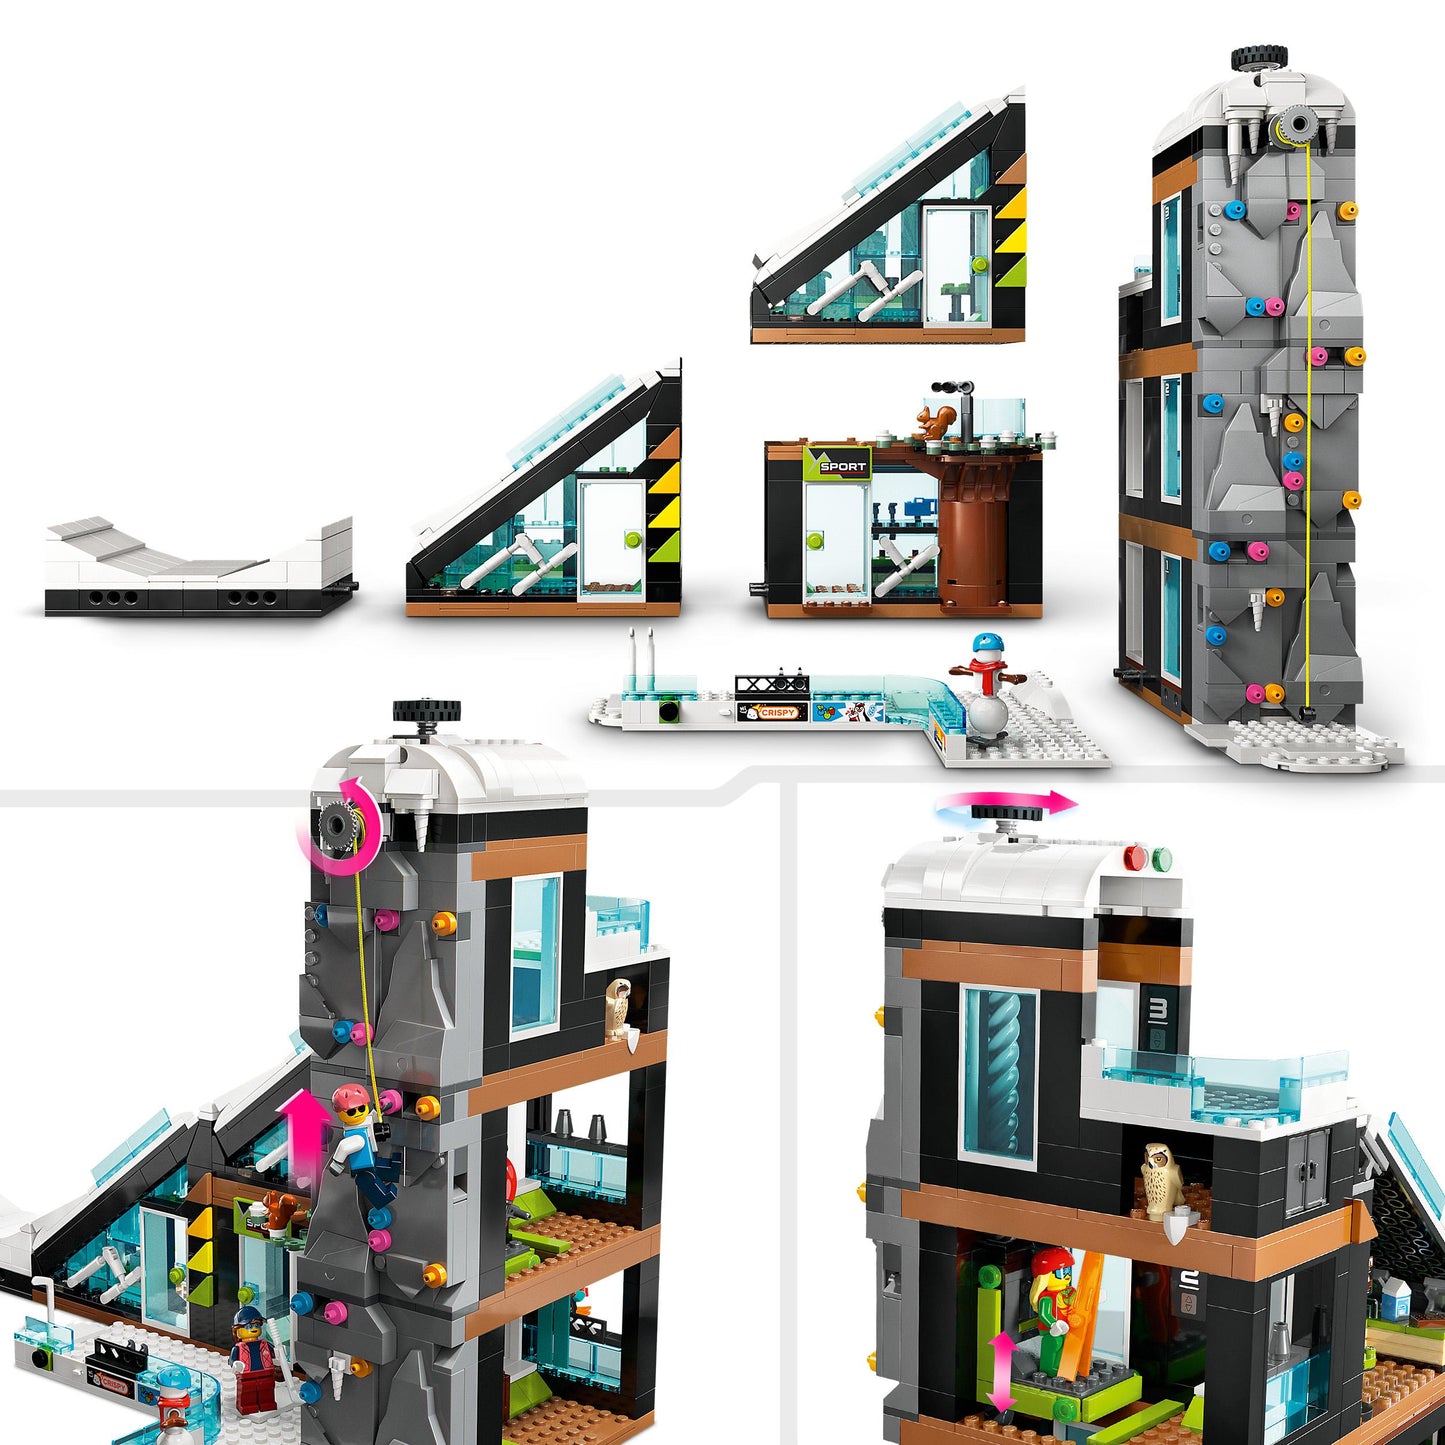 60366 LEGO City - Centro sci ed arrampicata